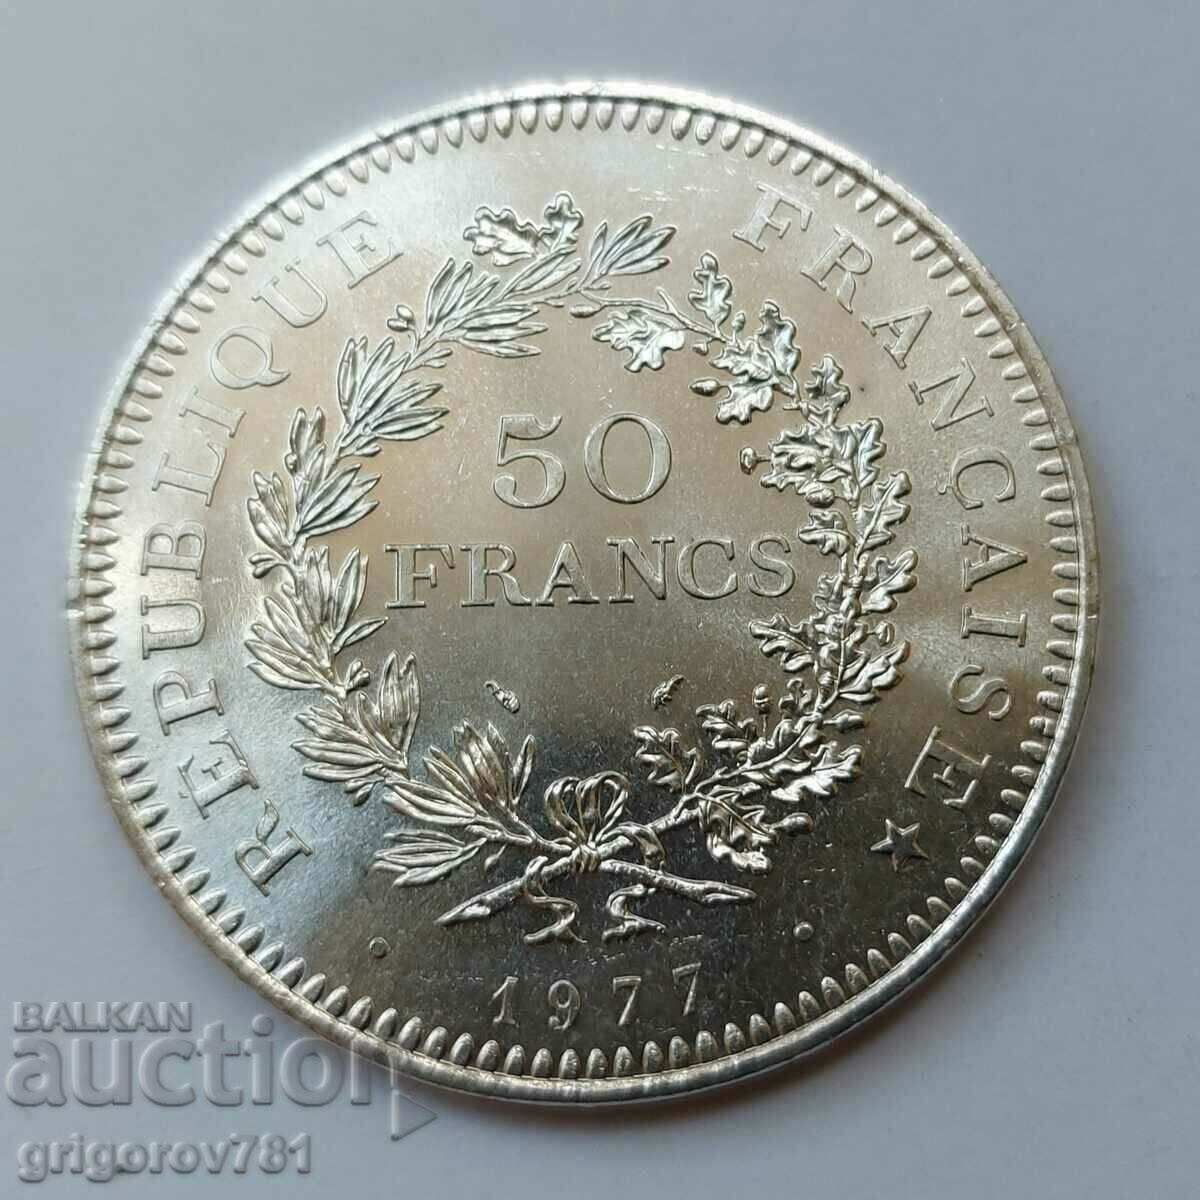 Ασήμι 50 Φράγκων Γαλλία 1977 - Ασημένιο νόμισμα #42